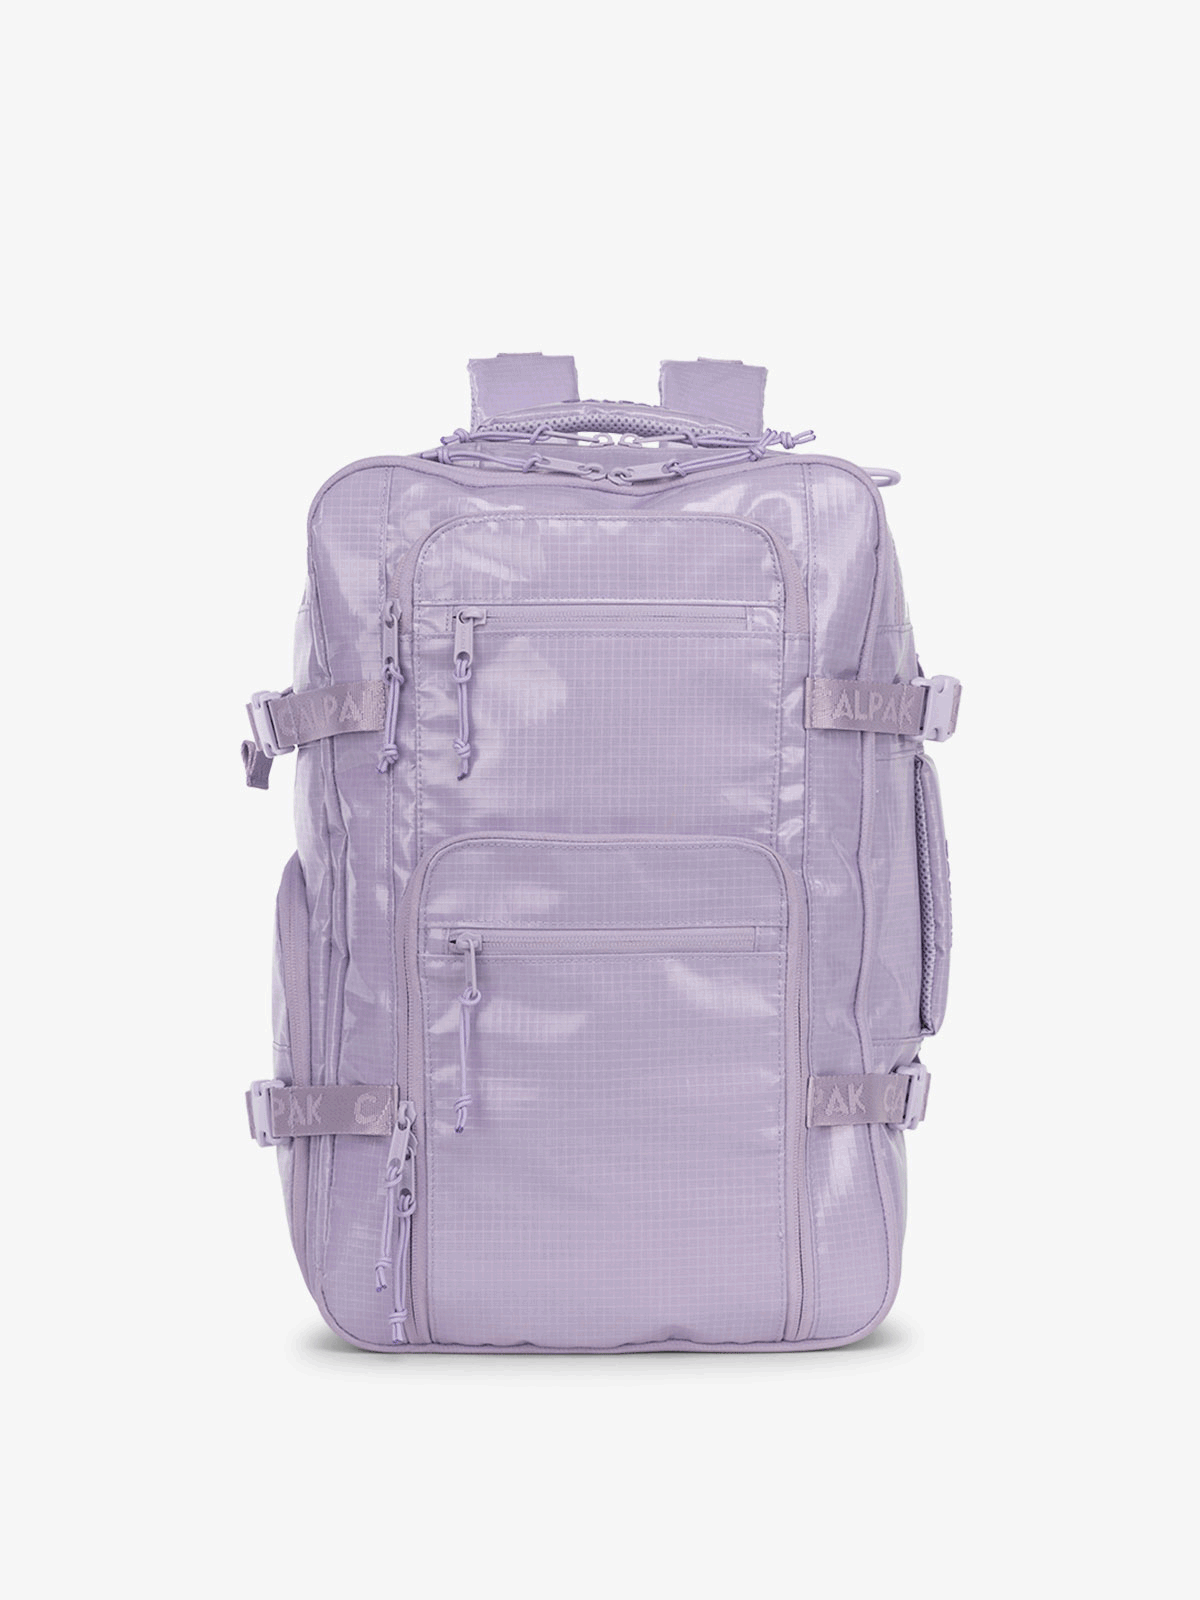 CALPAK Terra 26L Laptop Backpack and Duffel Bag 360 view in purple